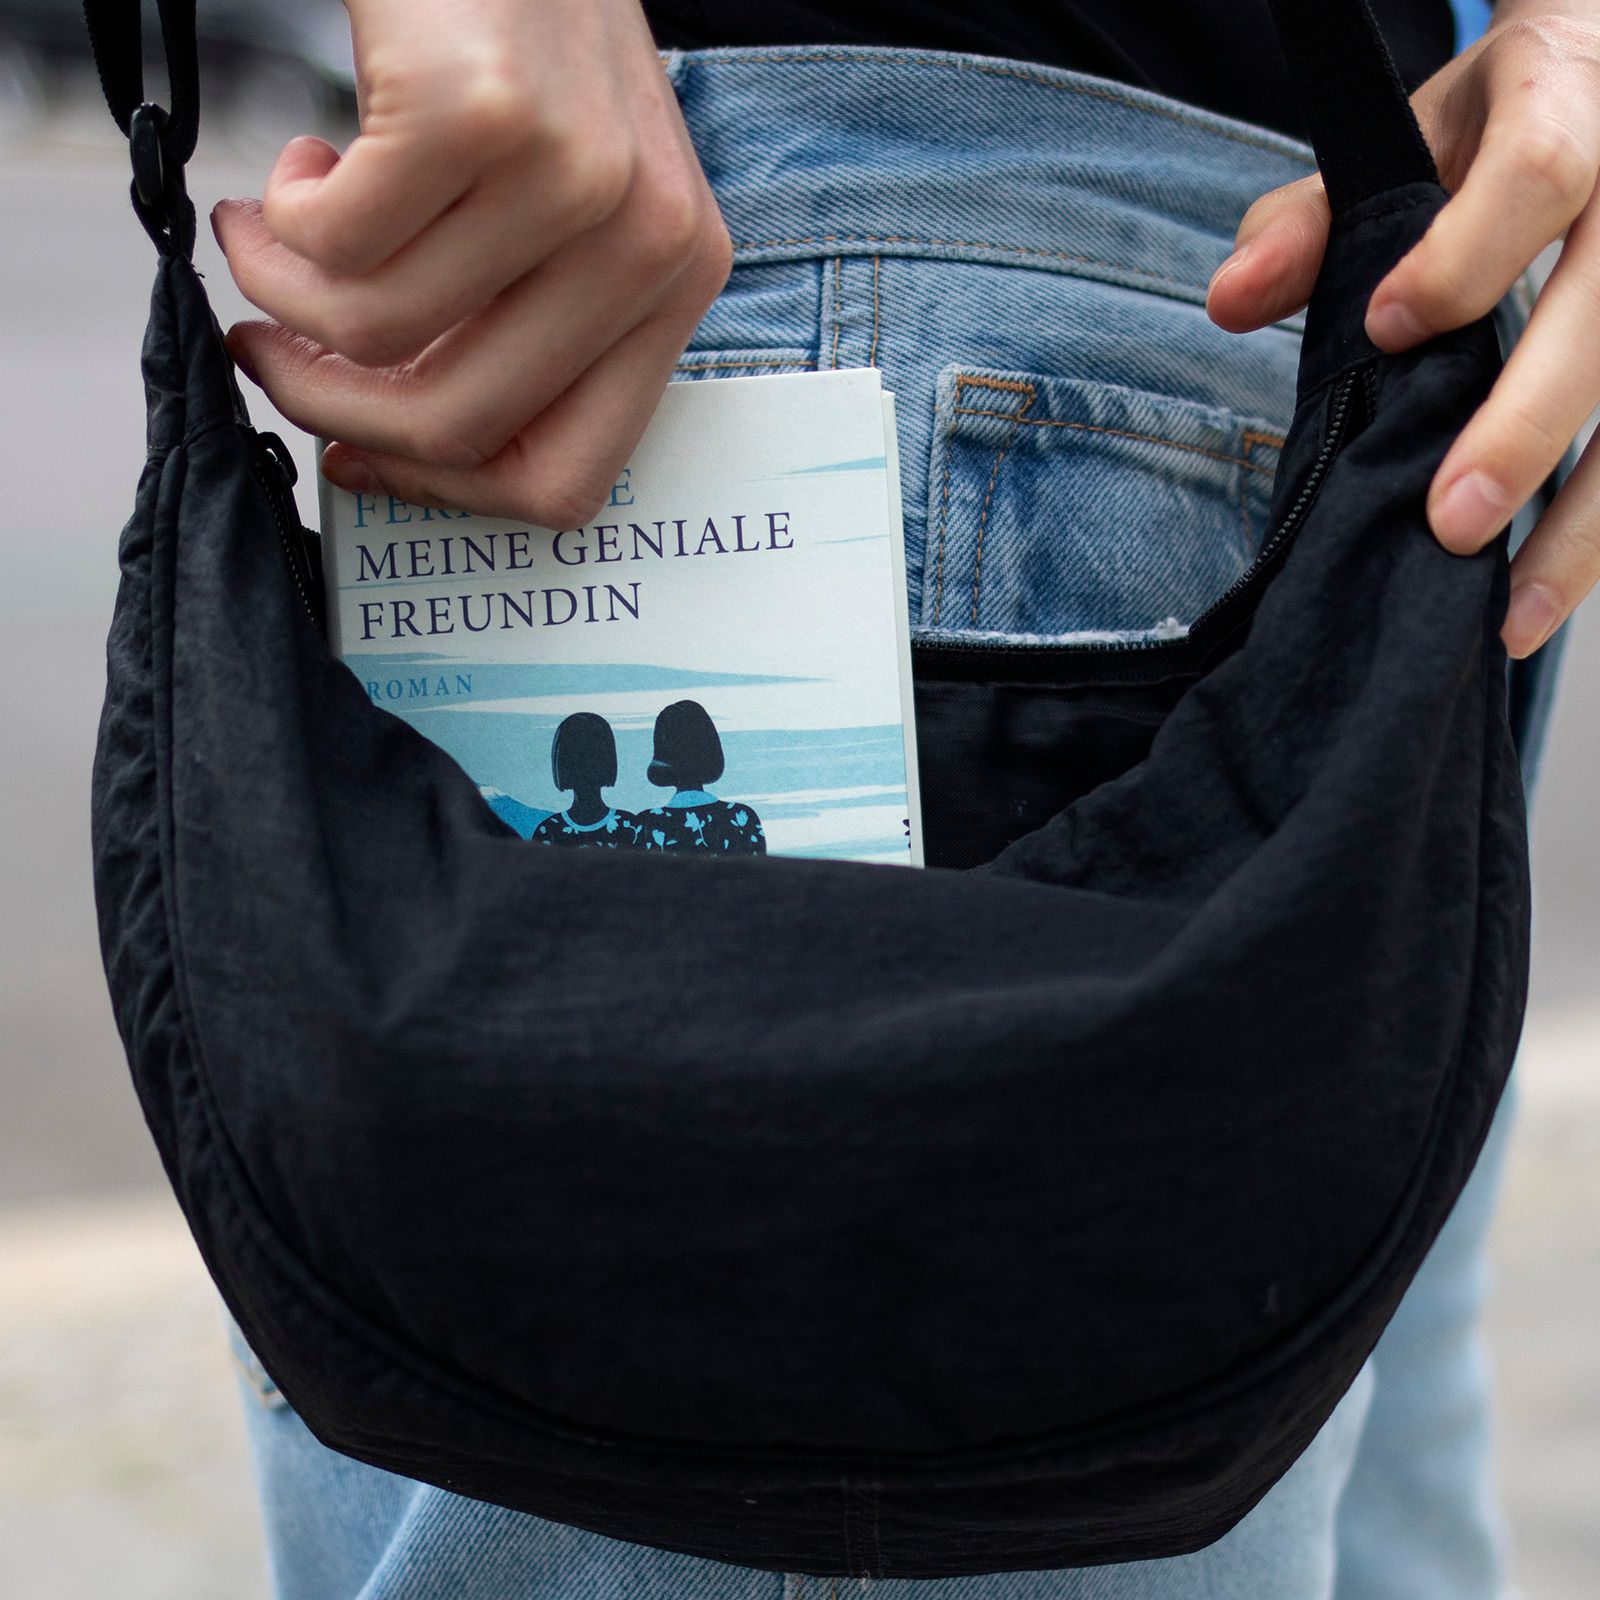 Foto einer Umhängetasche, aus der eine Hand das Buch "Meine geniale Freundin" von Elena Ferrante hochhebt, in der Ausgabe der Reihe Suhrkamp Pocket